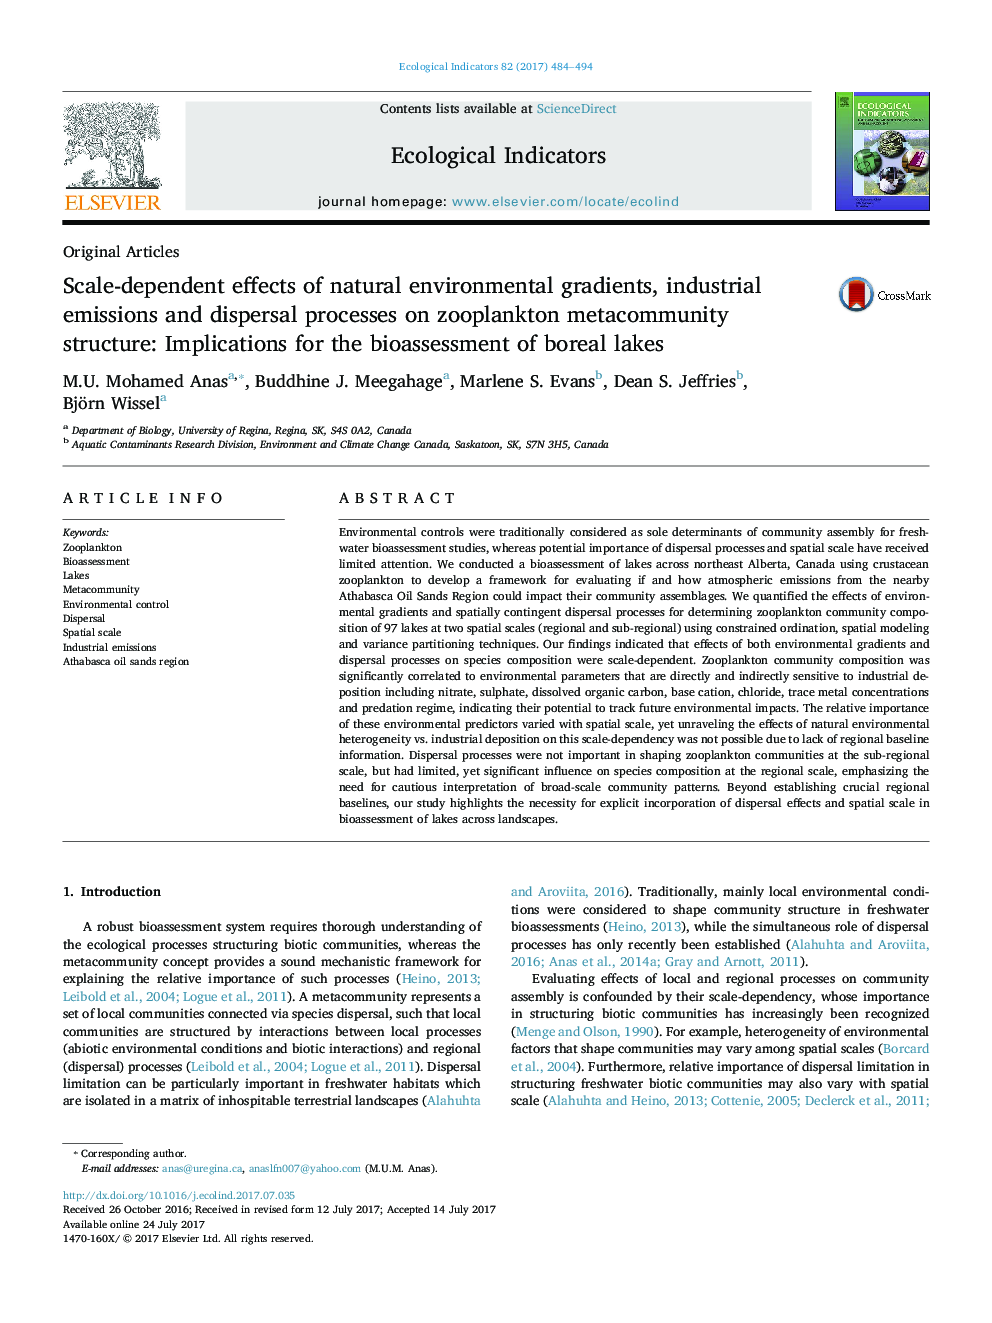 مقالات اصلی تاثیرات اساسی وابستگی های طبیعی محیطی، انتشارات صنعتی و فرآیندهای پراکندگی در ساختار متاکومونیت زئوپلانکتون: پیامدهای ارزیابی زیست محیطی دریاچه های بومی 